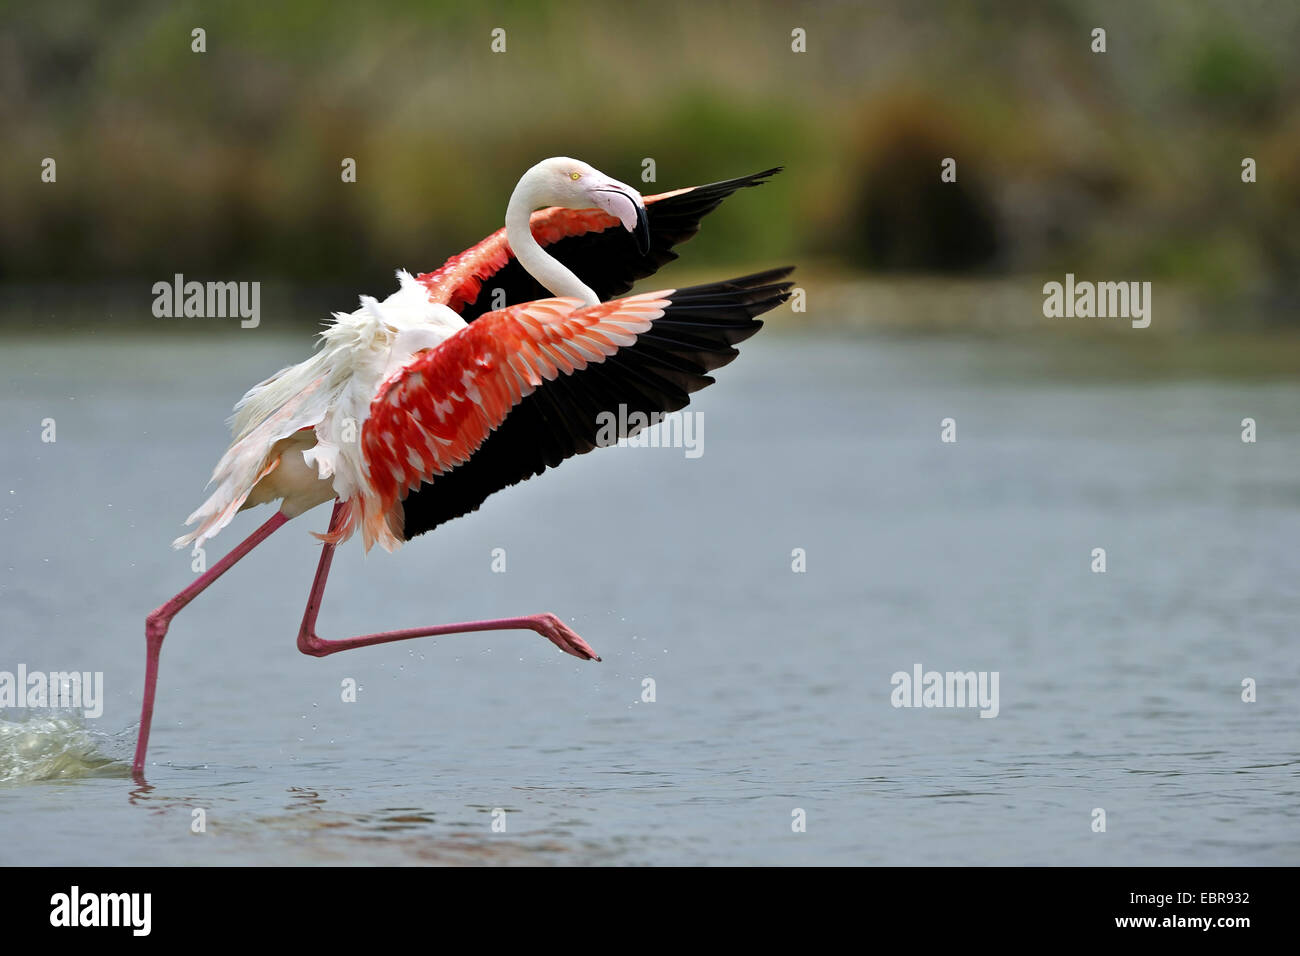 Fenicottero maggiore, American flamingo, Caribbean Flamingo (Phoenicopterus ruber ruber), partendo per volare, STATI UNITI D'AMERICA, Florida Everglades National Park Foto Stock